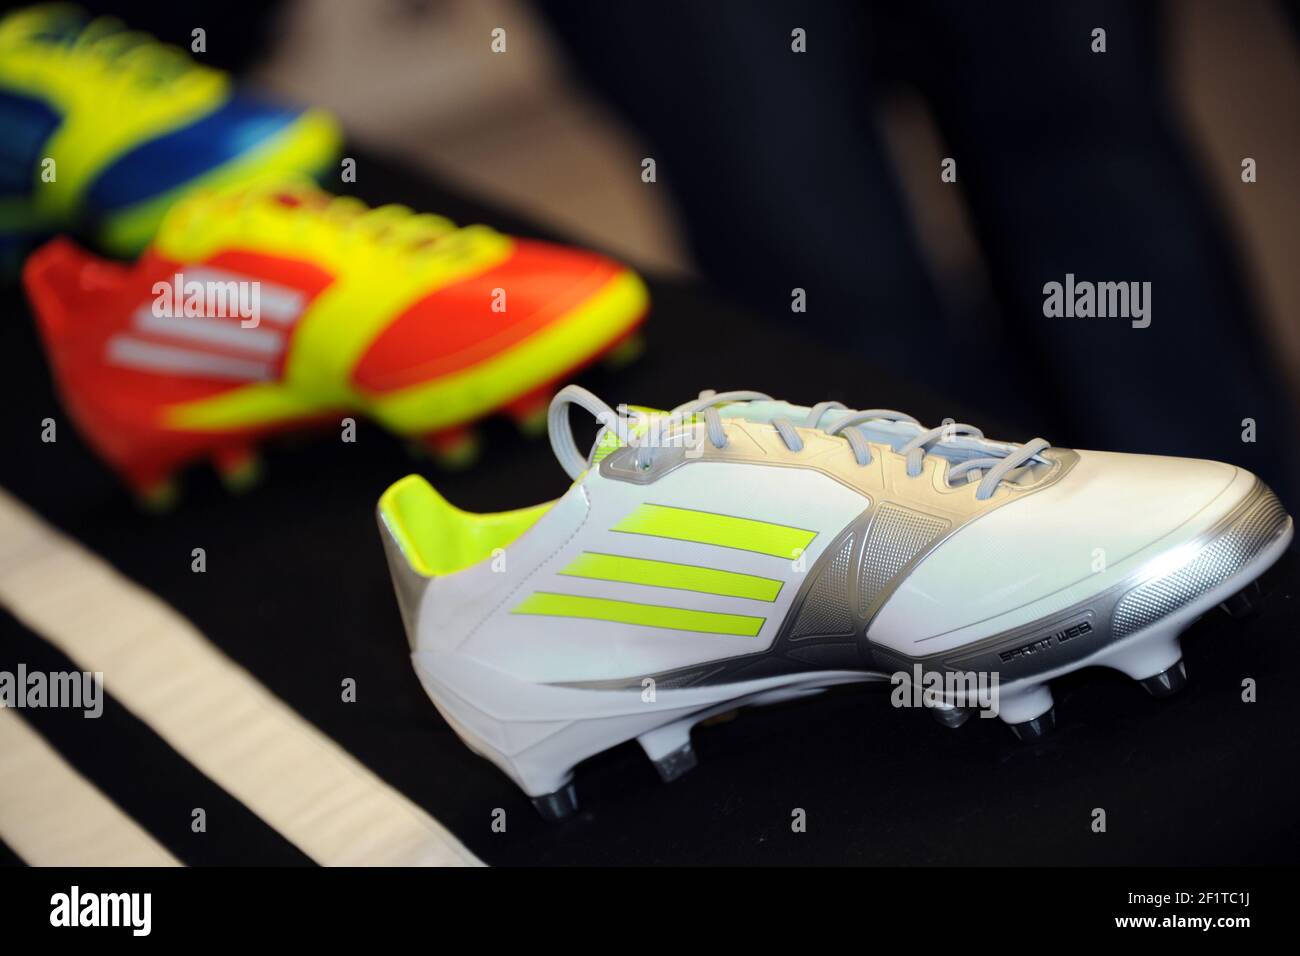 Adidas F50 Stockfotos und -bilder Kaufen - Alamy